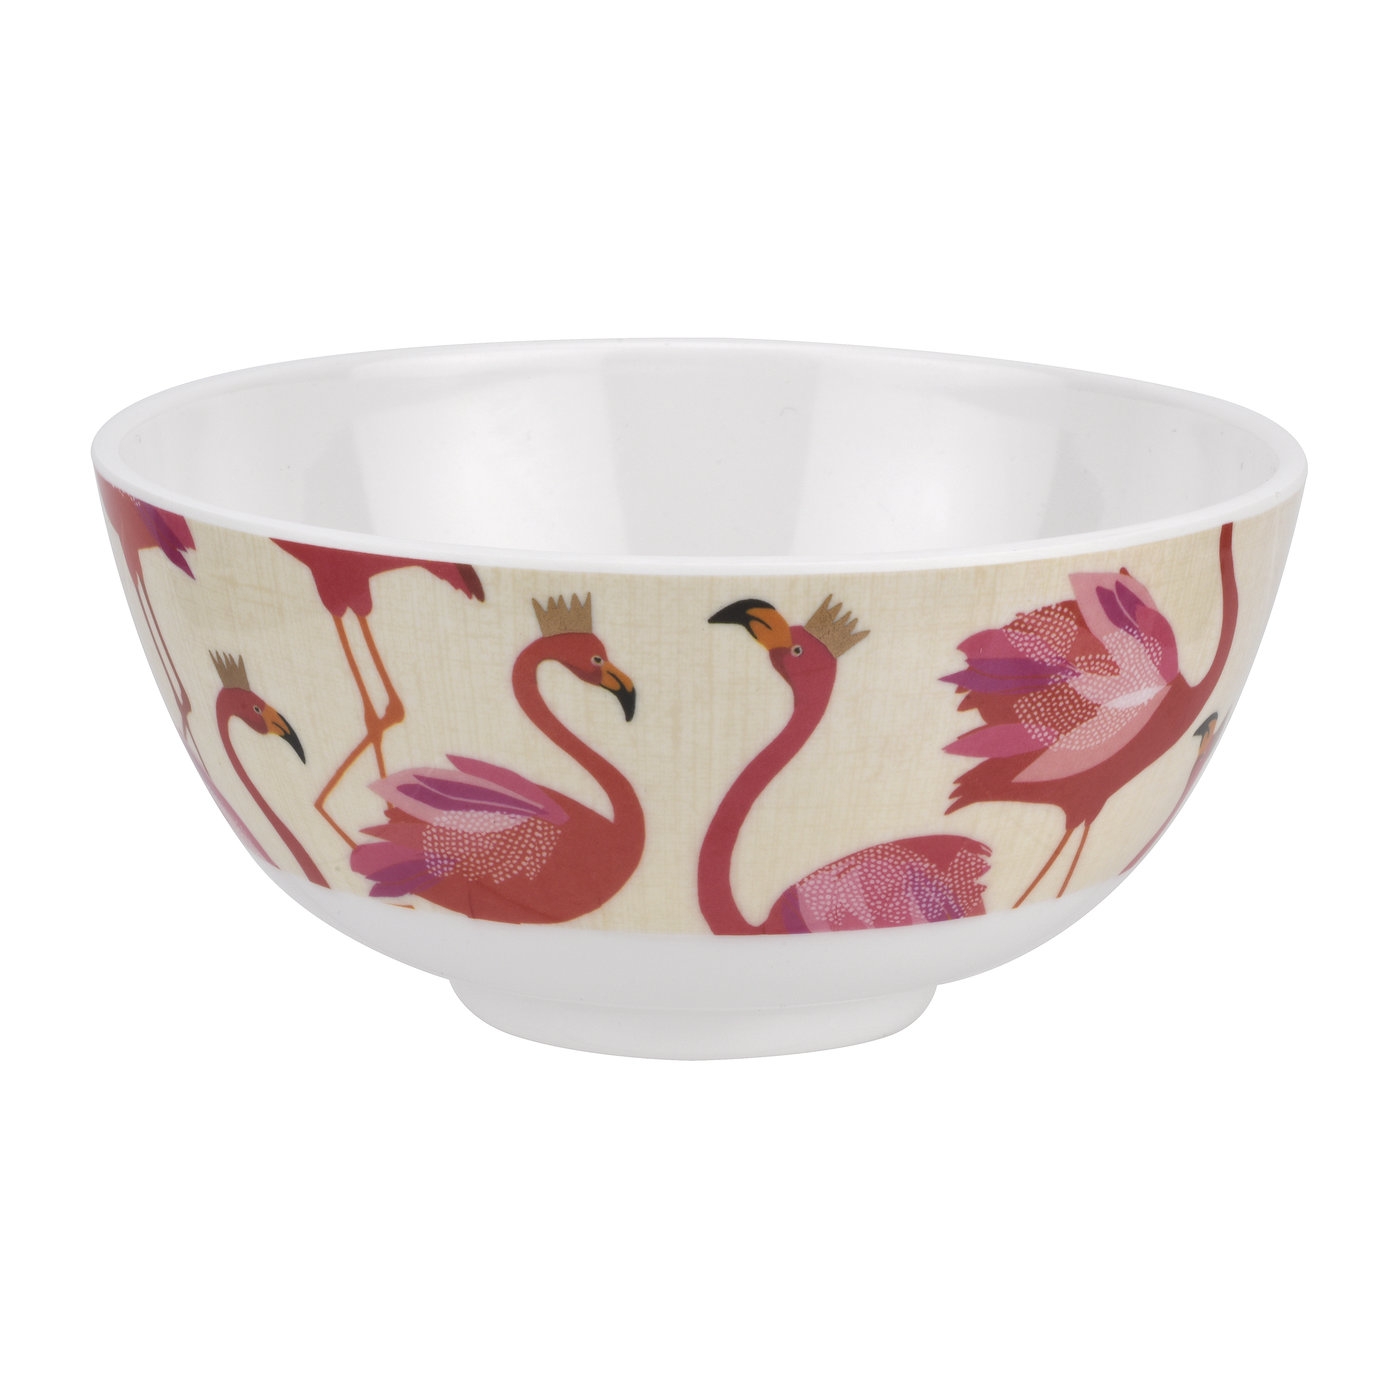 포트메리온 '사라 밀러 런던' 공기 그릇 4개 세트 Sara Miller London for Portmeirion Flamingo 6 Inch Melamine Bowls Set of 4